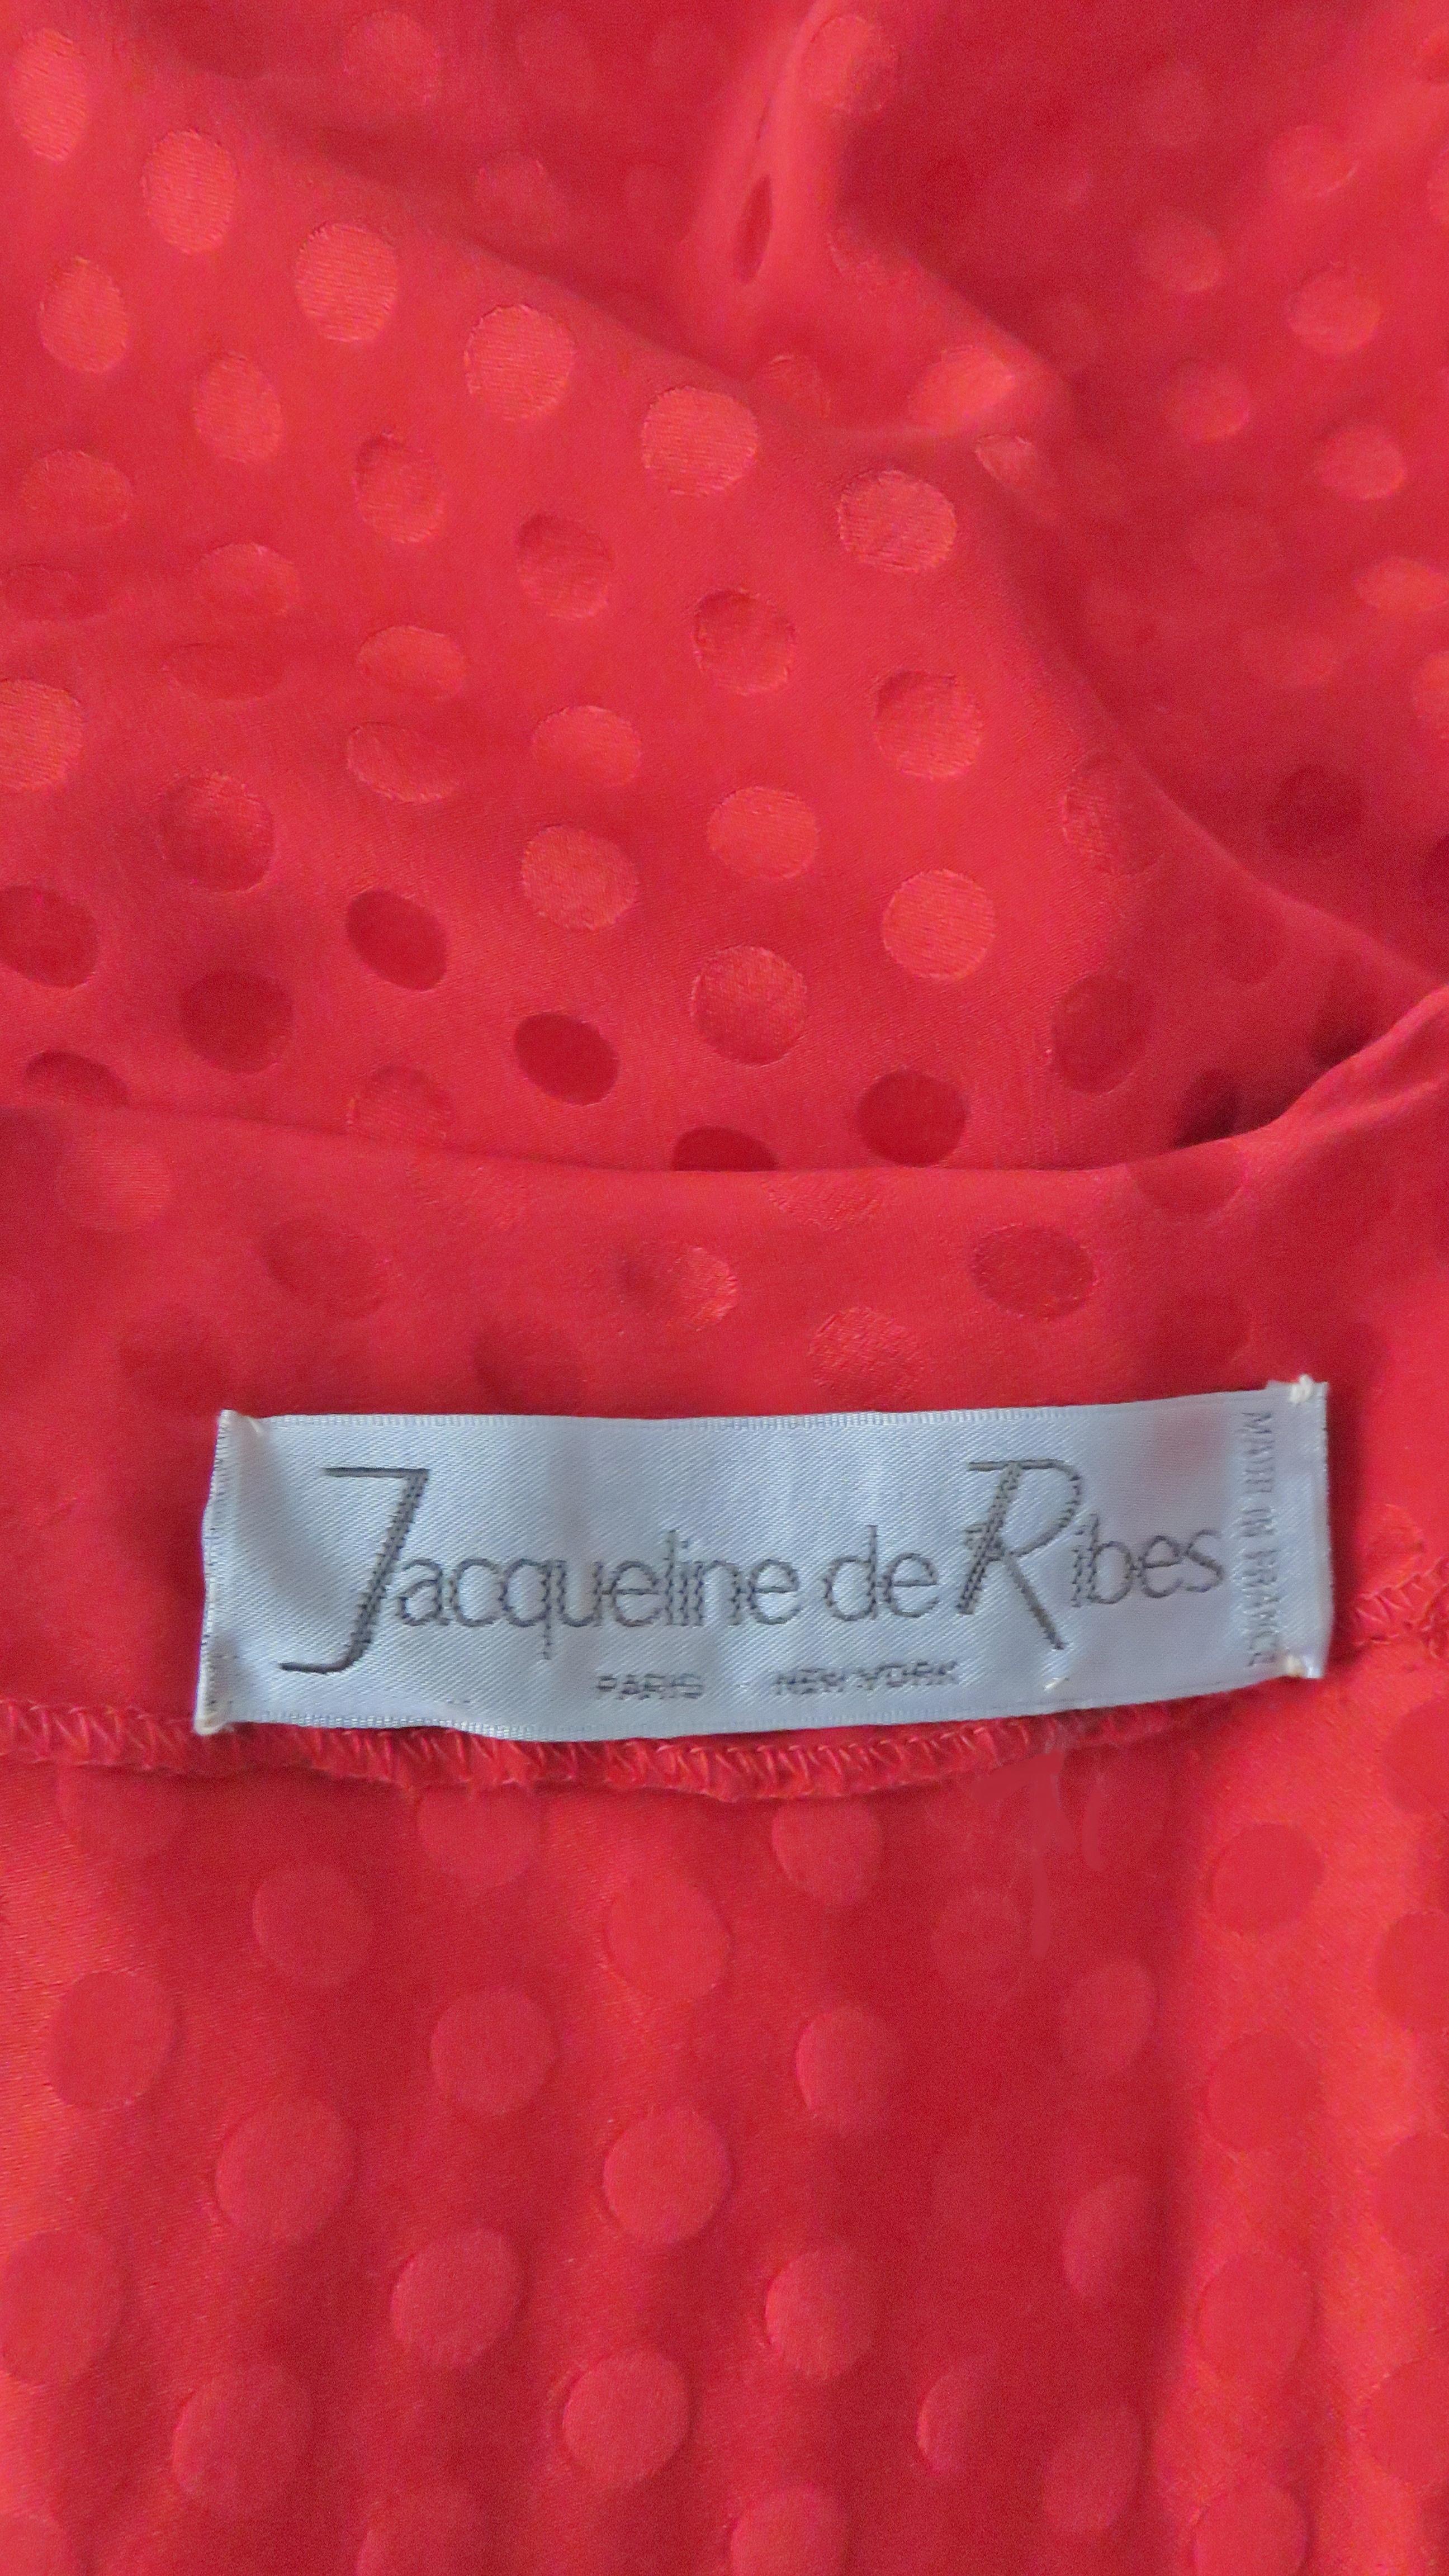 Jacqueline de Ribes 1980s Wrap Silk Dress For Sale 13